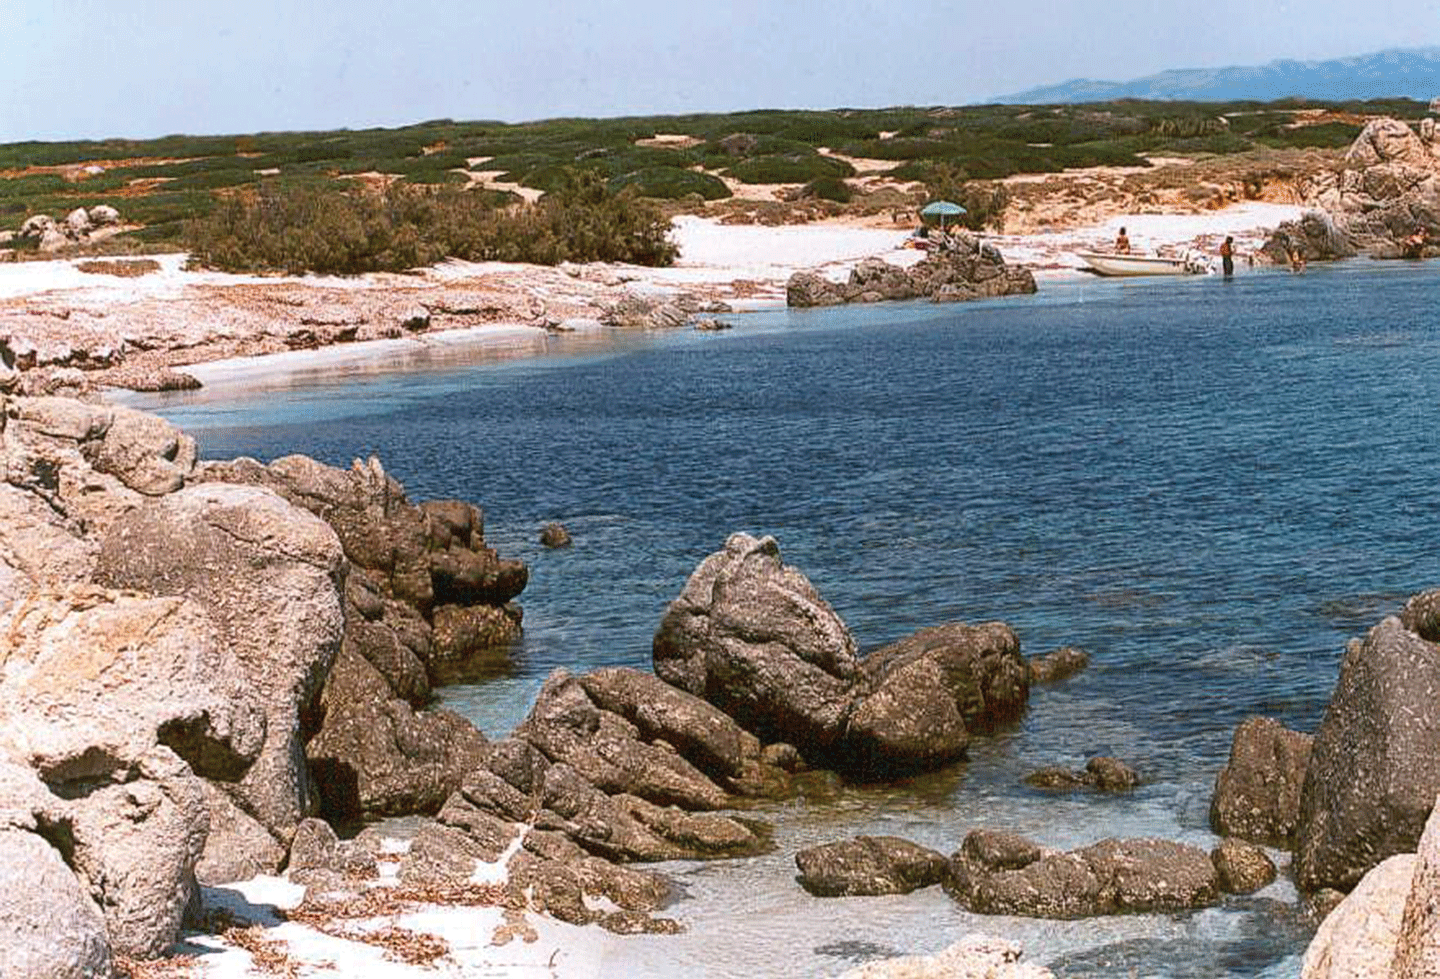 Sardinia island